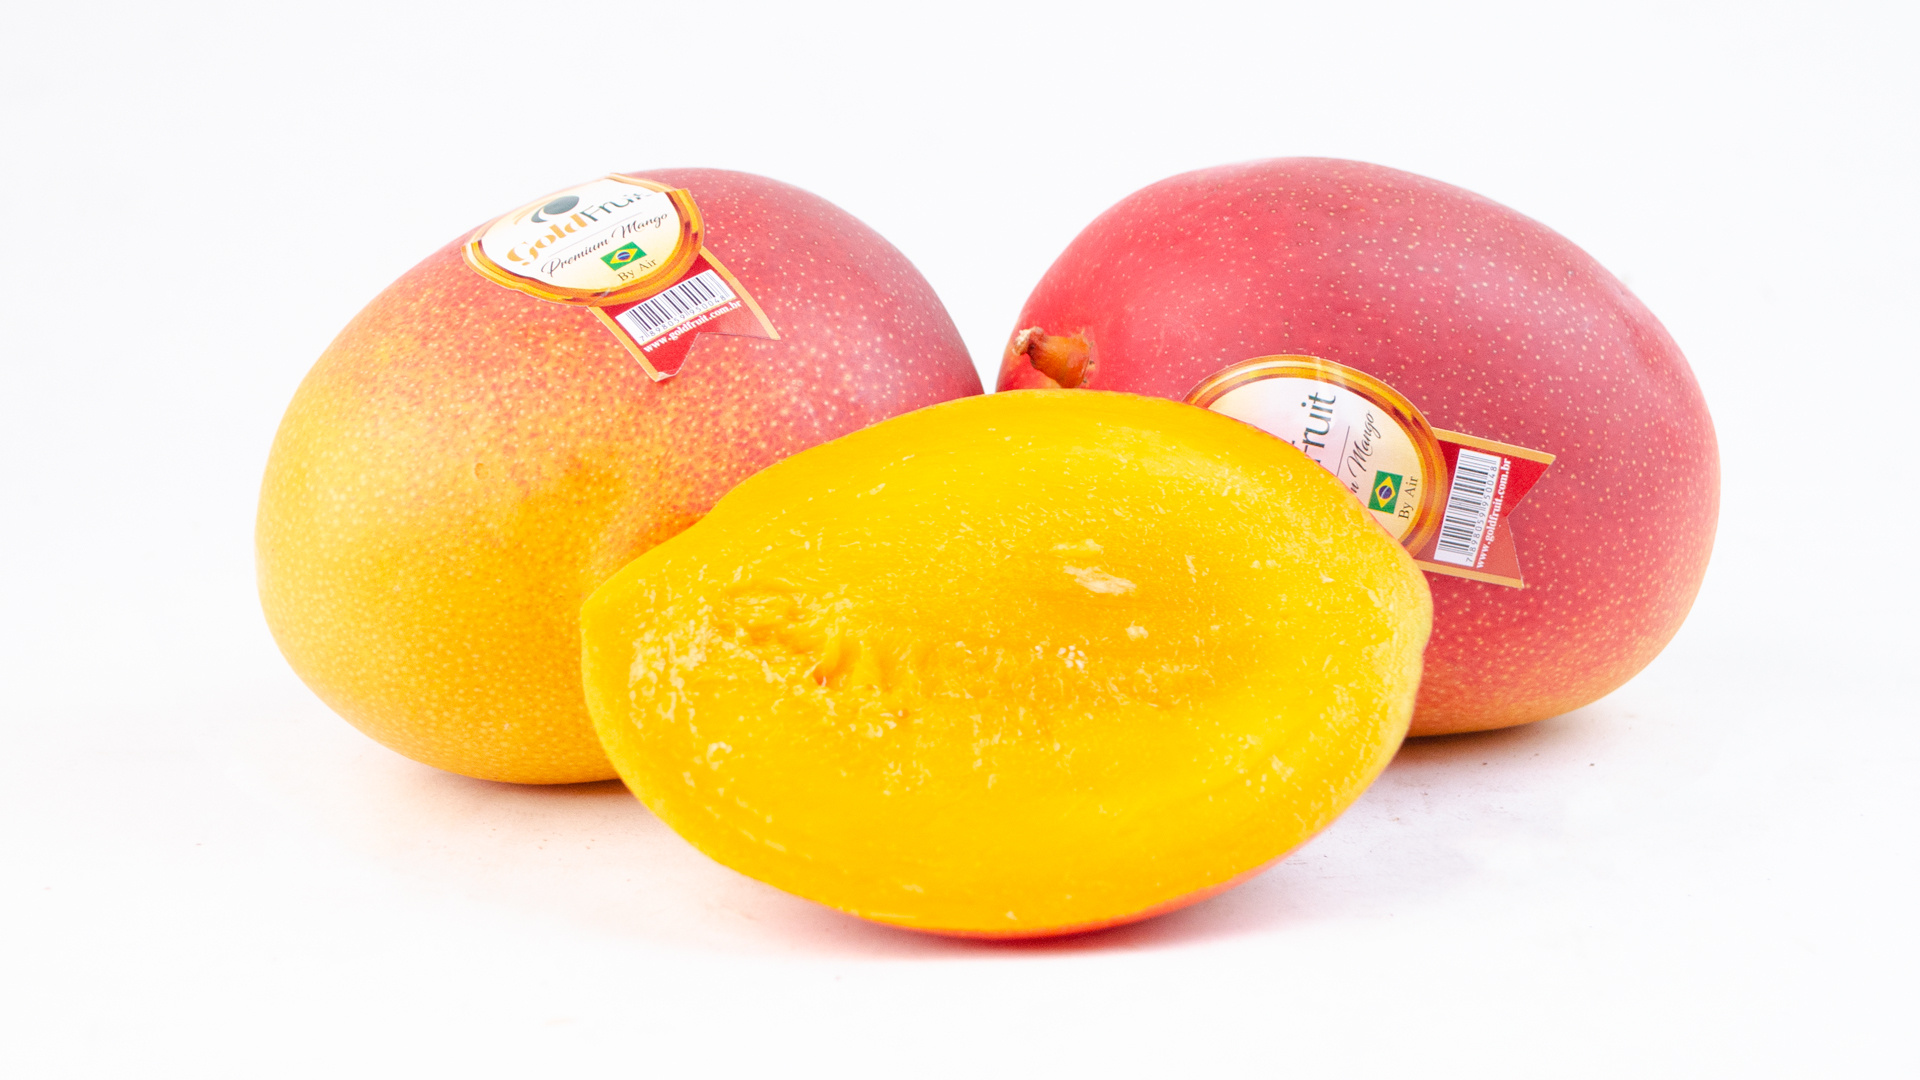 Mango: An excellent source of vitamin A, carotene pigments, vitamins, and potassium. 1920x1080 Full HD Wallpaper.